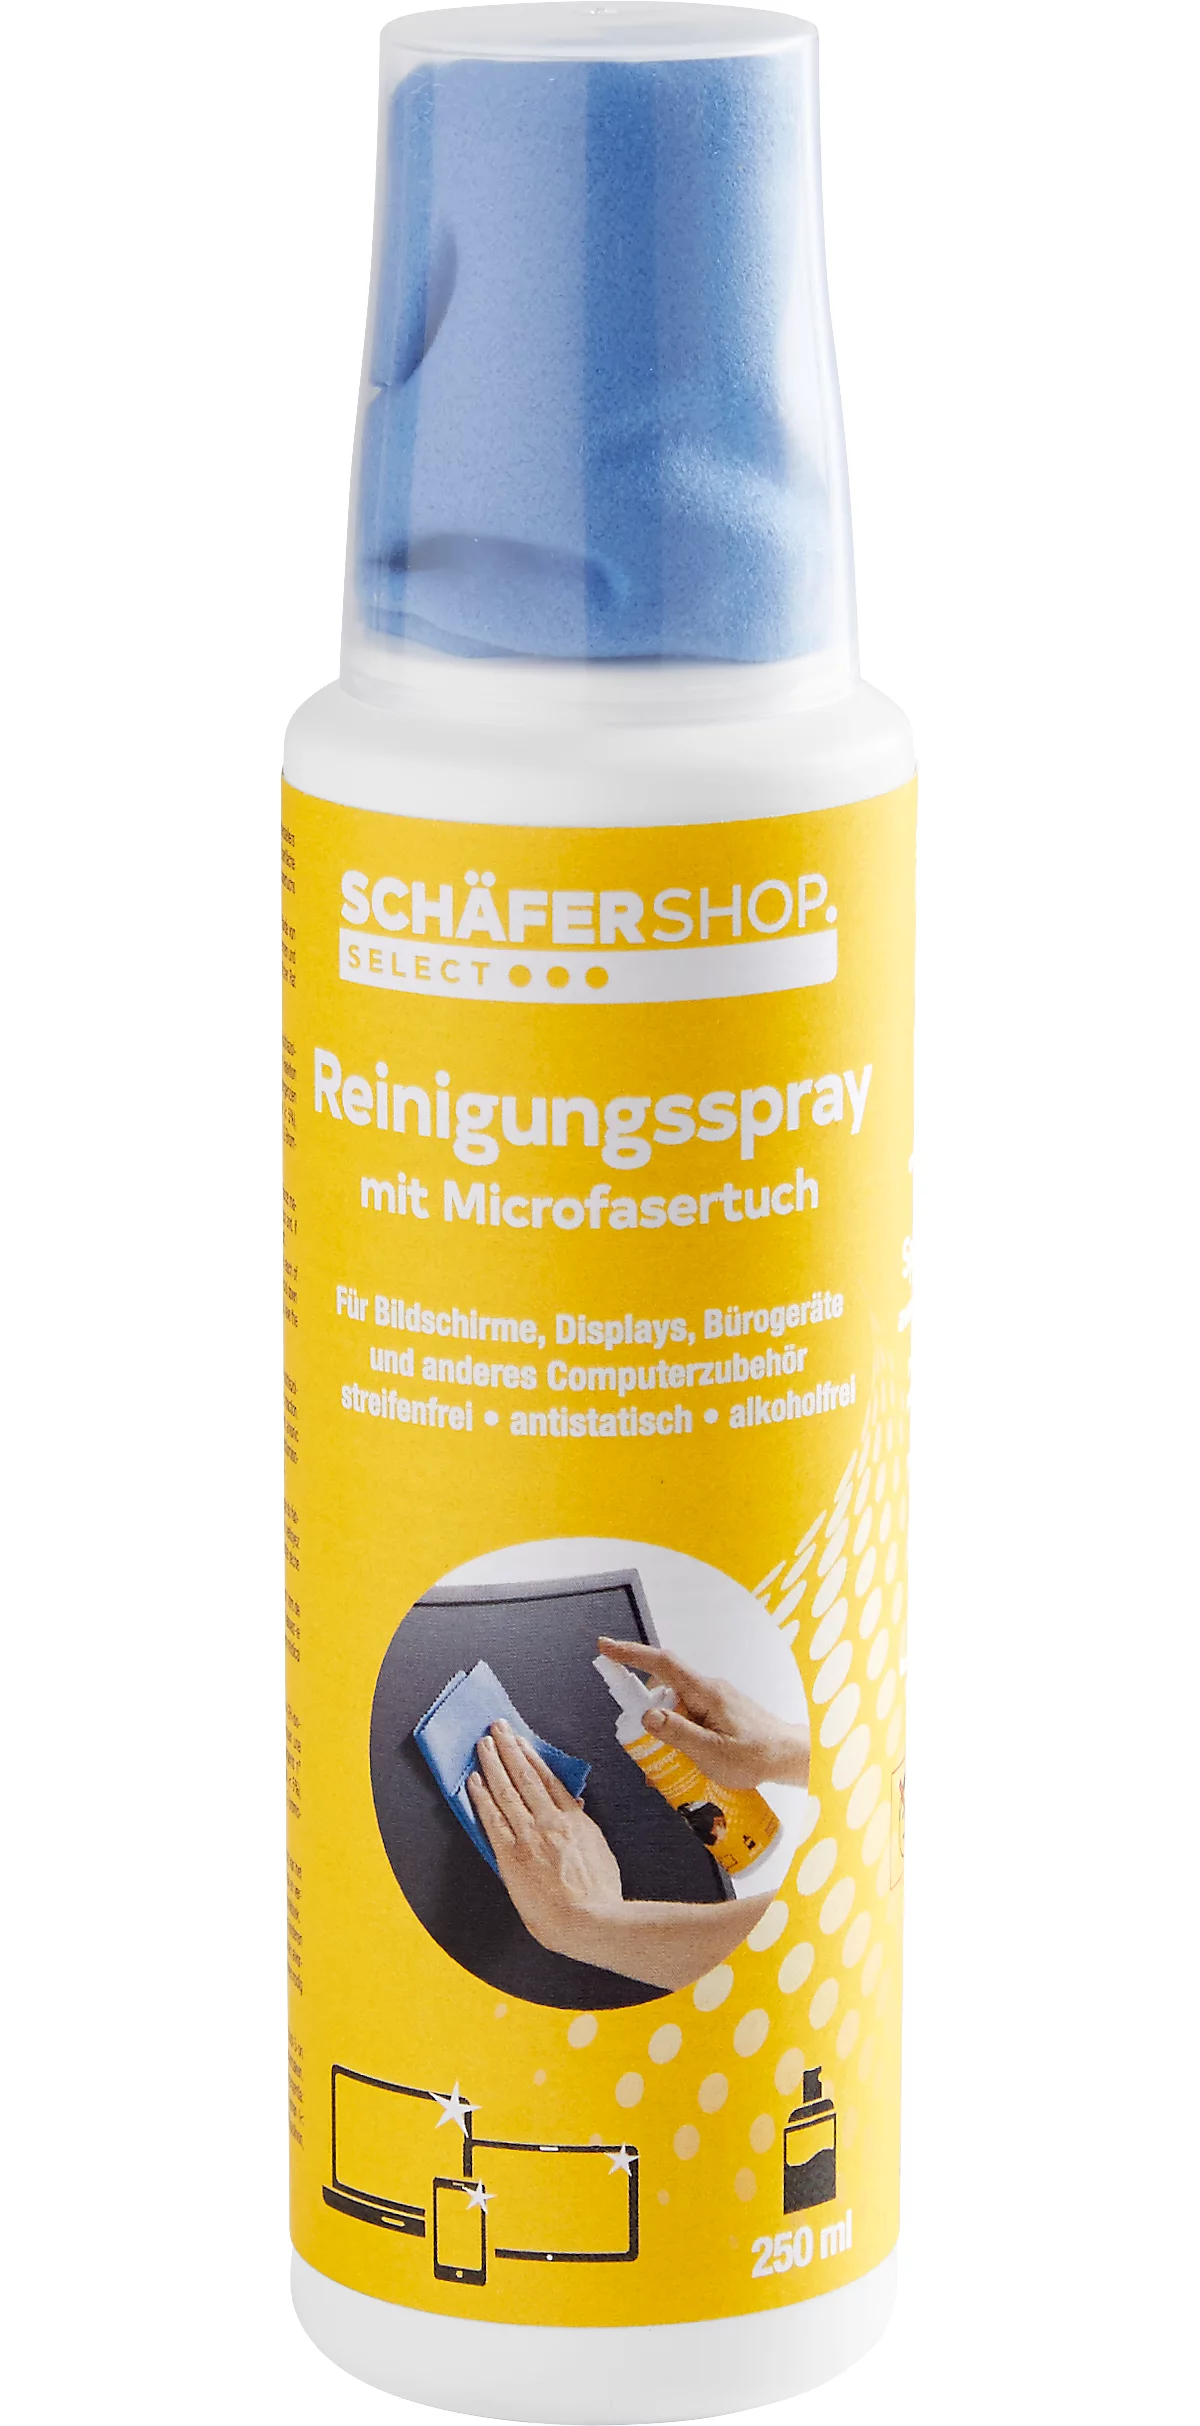 Spray de limpieza de monitores Schäfer Shop Select, para pantallas y accesorios informáticos, antiestático, sin rayas ni alcohol, con paño de microfibra, 250 ml